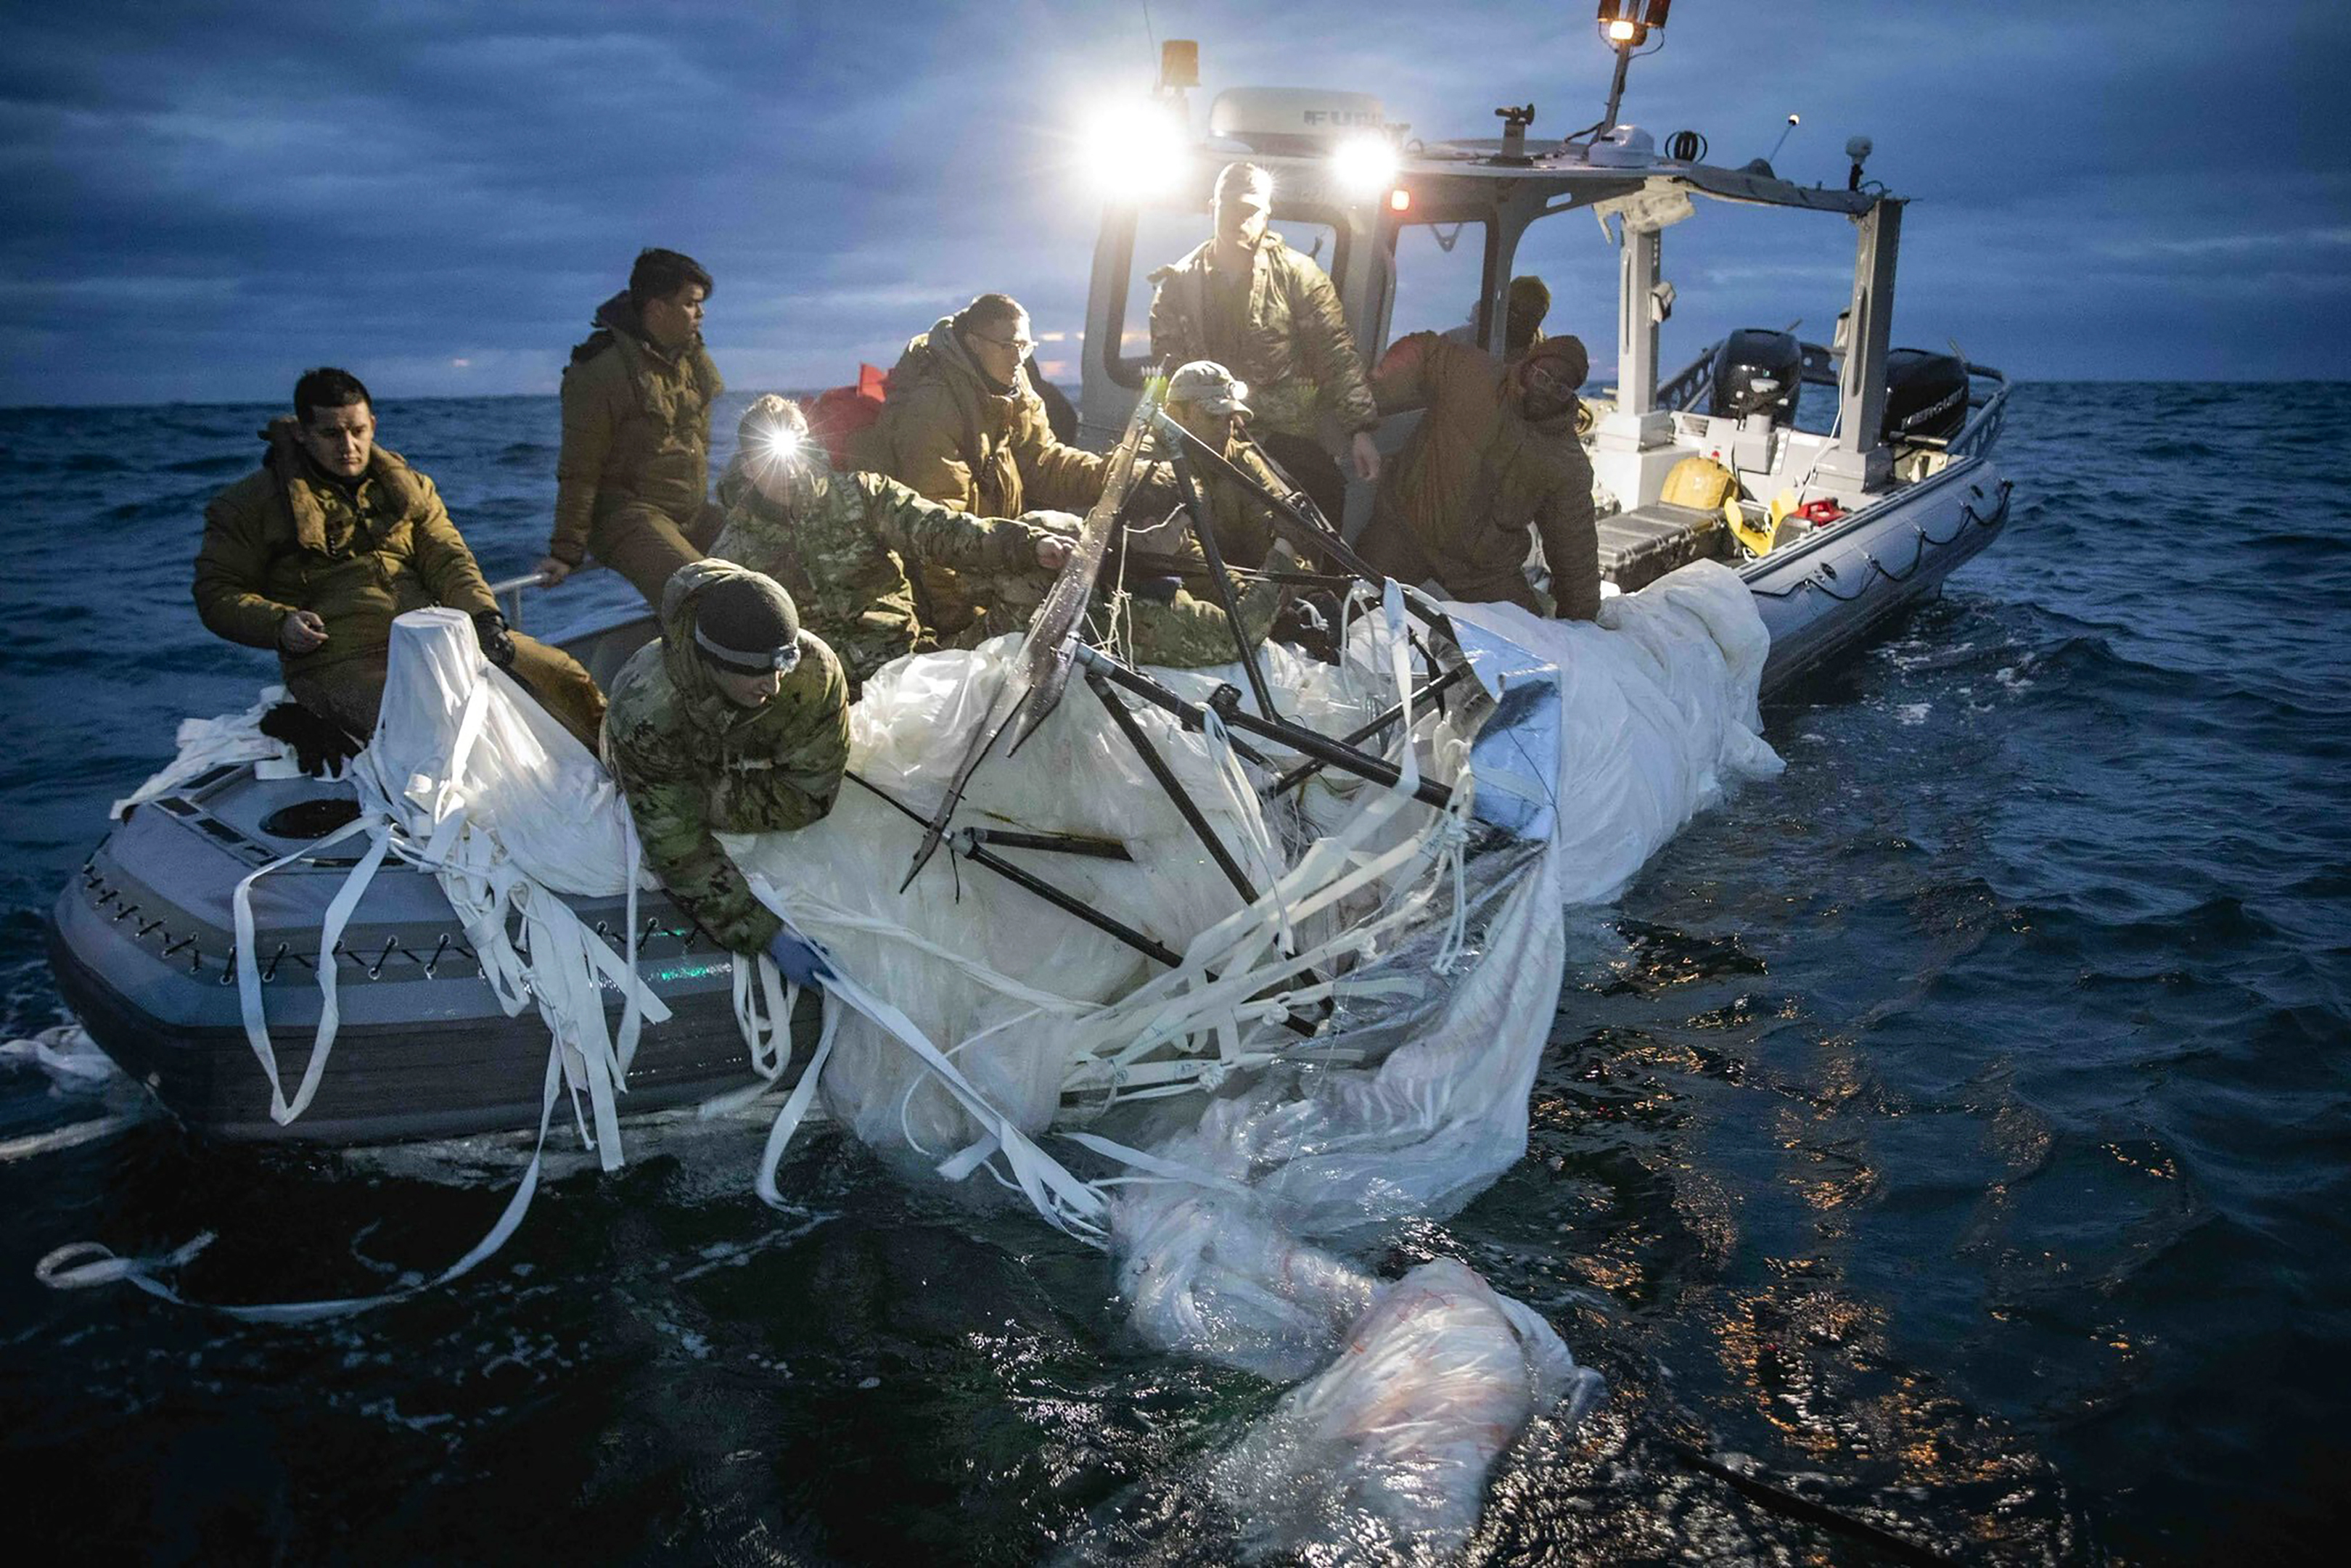 Imagen proporcionada por la Armada de Estados Unidos de marineros del Grupo 2 de Eliminación de Artefactos Explosivos recuperando restos de un globo espía en la costa de Myrtle Beach, Carolina del Sur, el domingo 5 de febrero de 2023 (Armada de Estados Unidos vía AP)